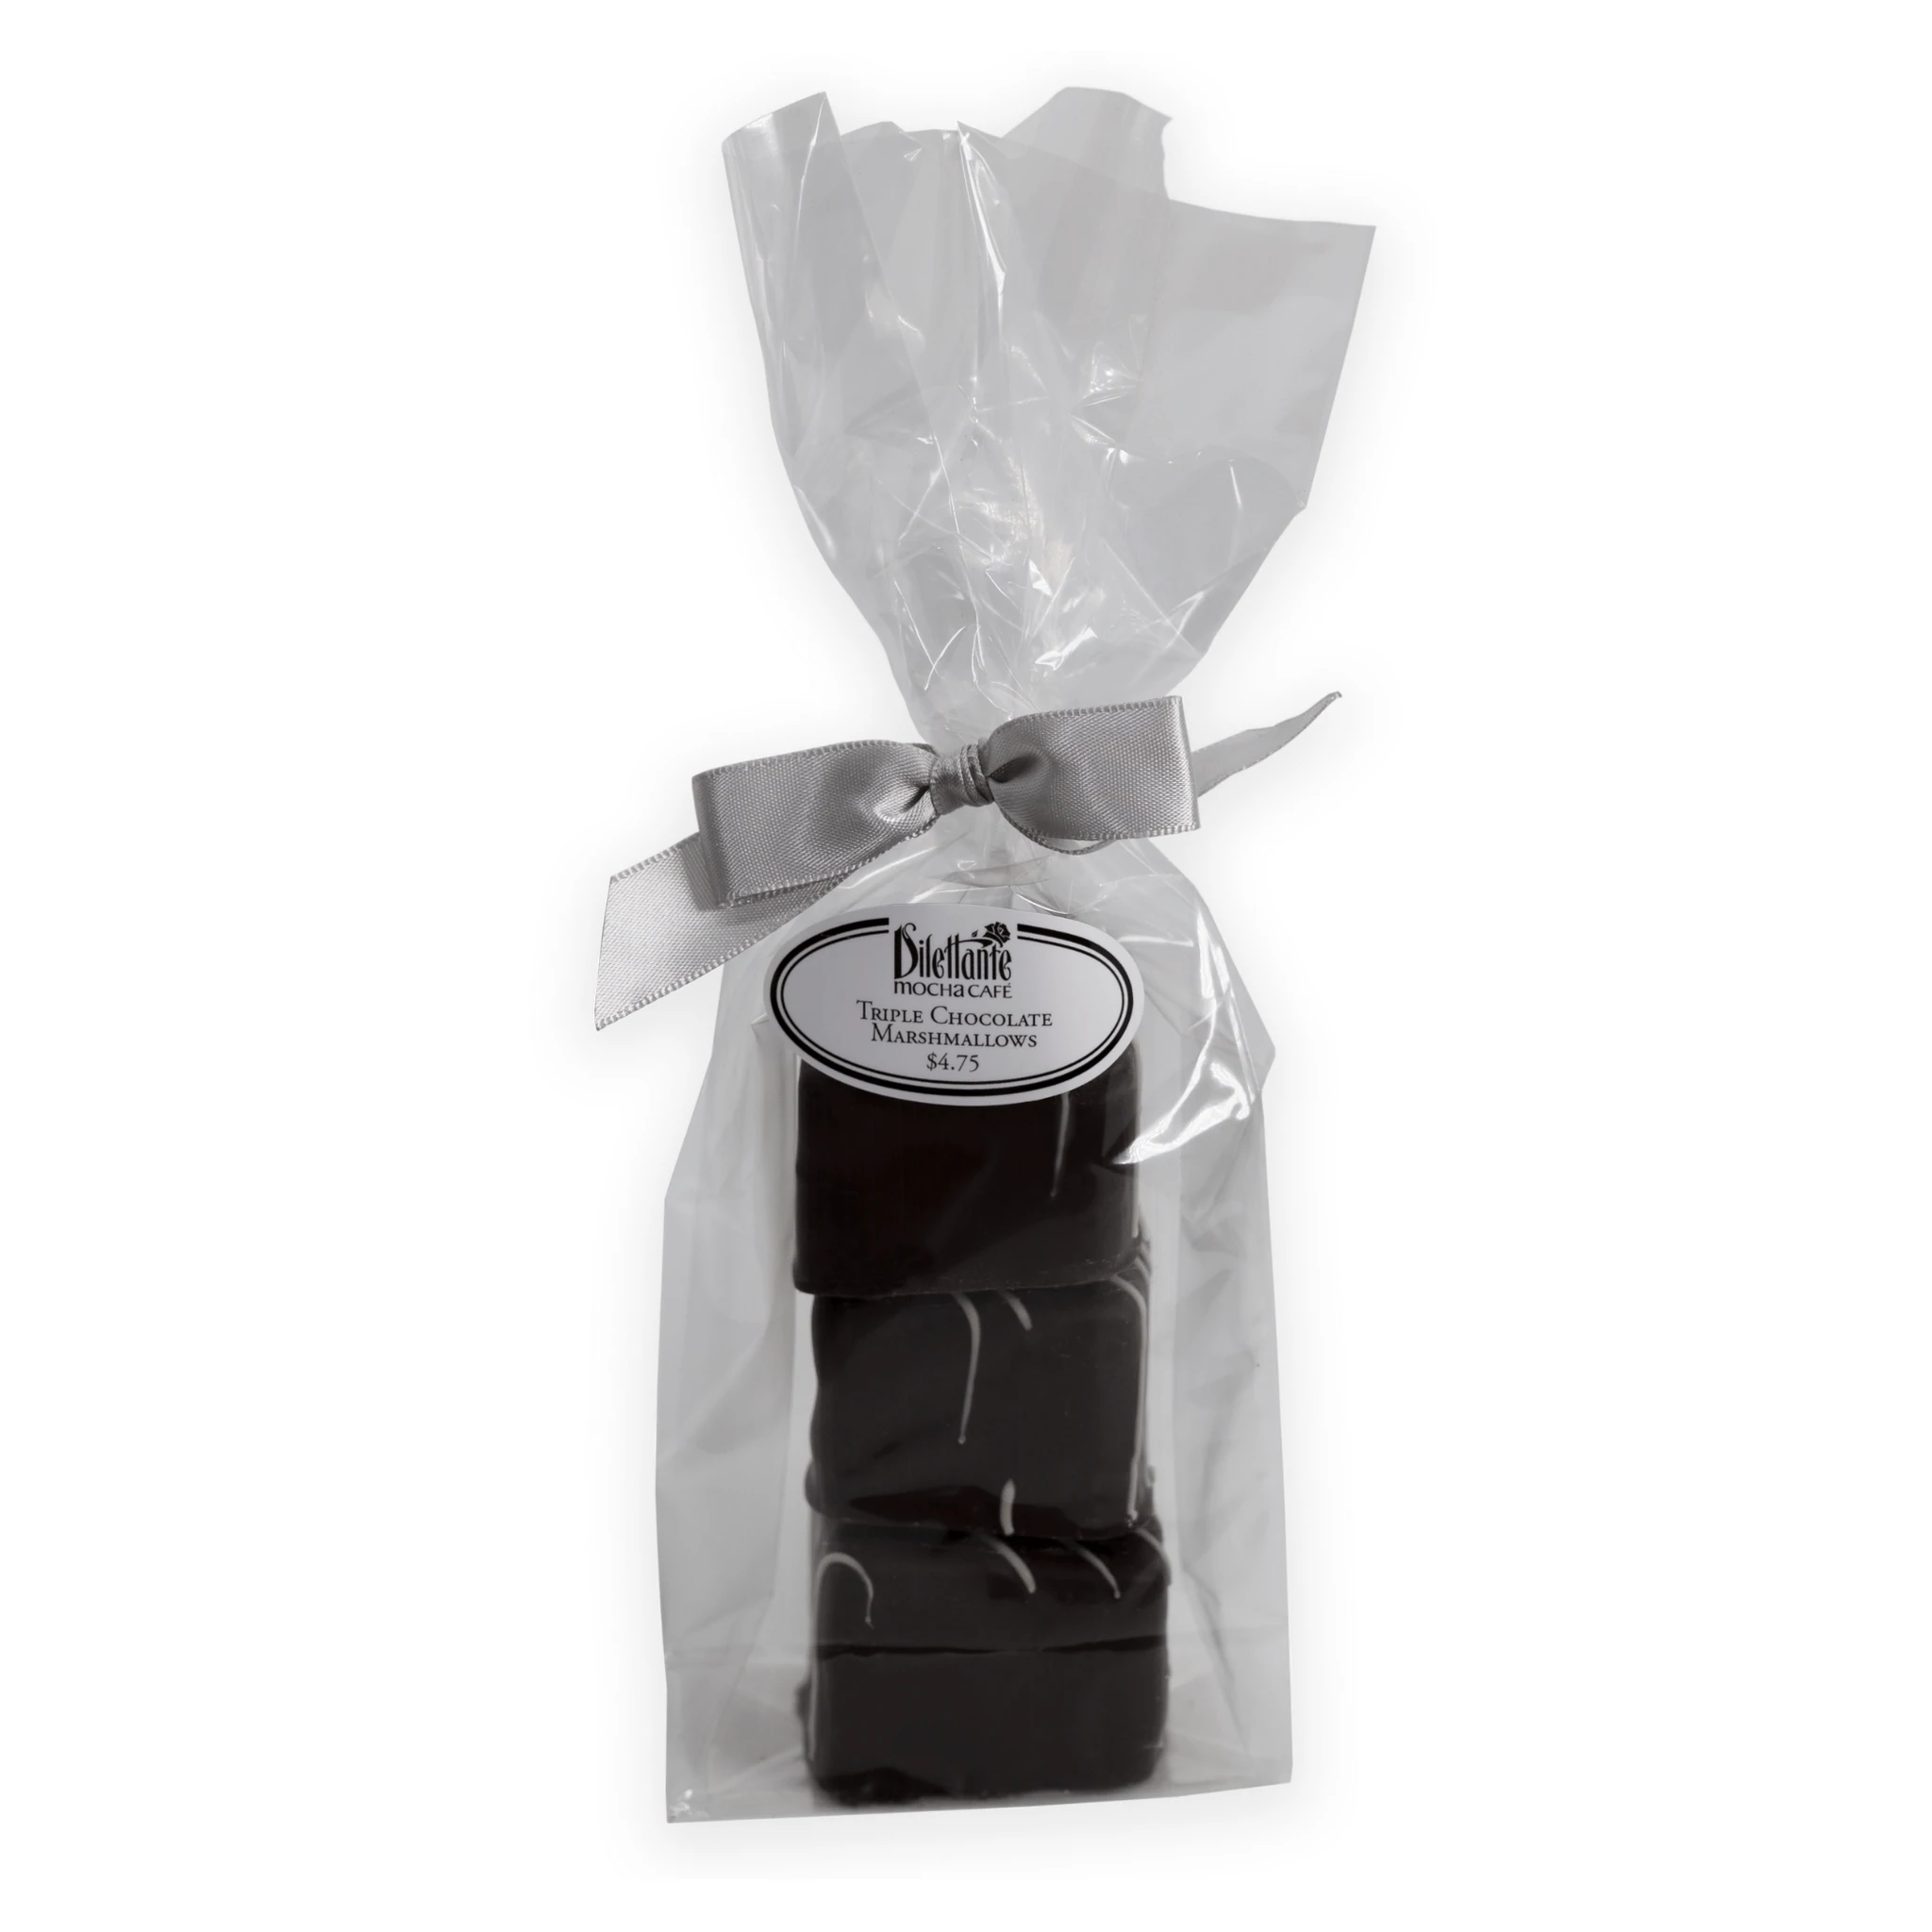 Godiva Holiday Premium Chocolate Variety Assorted Chocolates, 4-pack